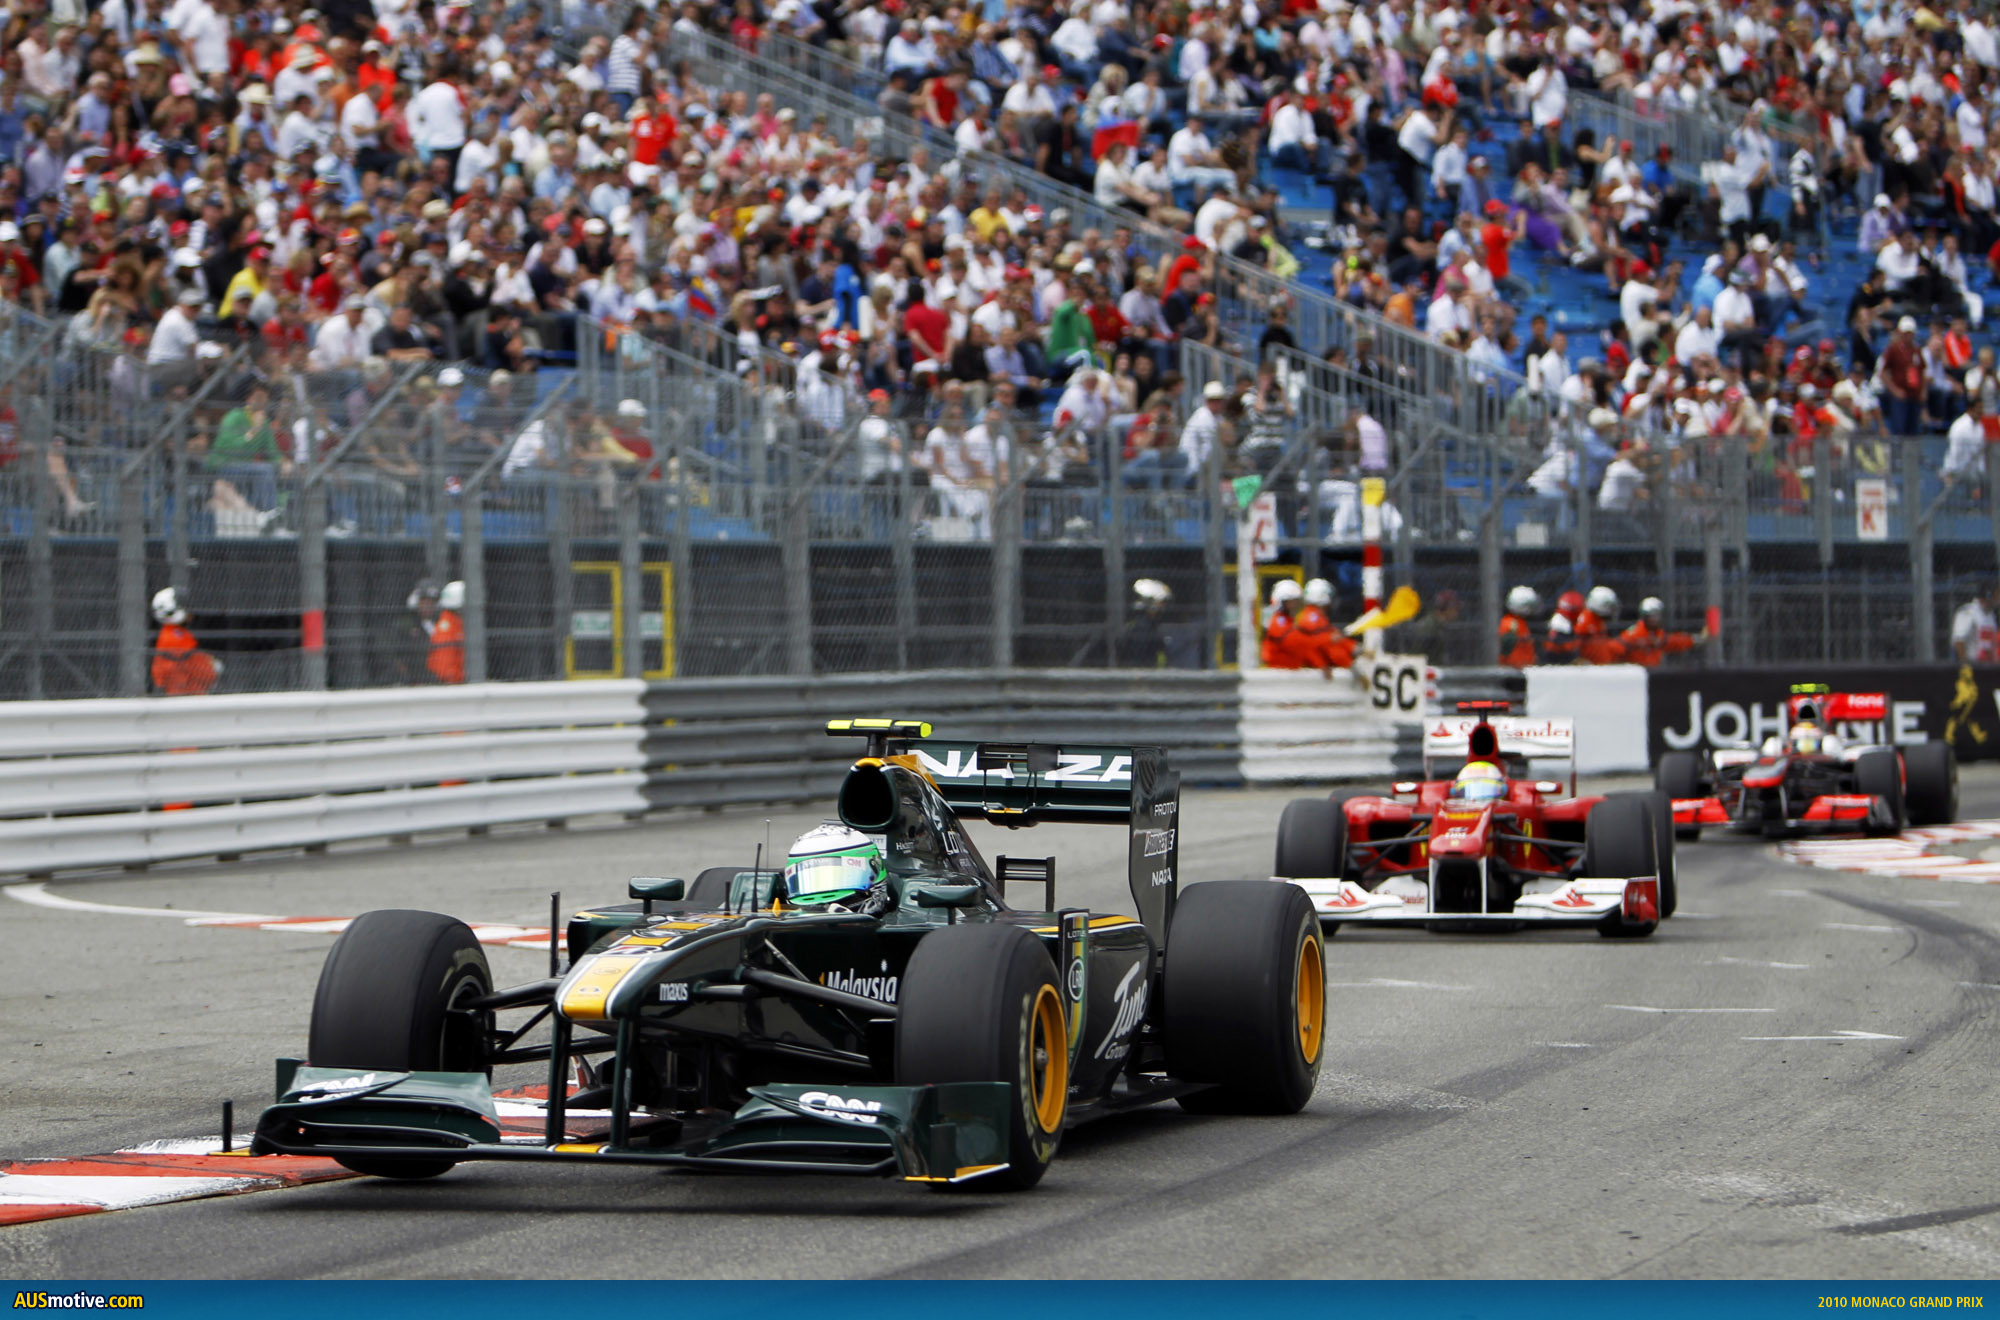 2010 Monaco Grand Prix in pictures.